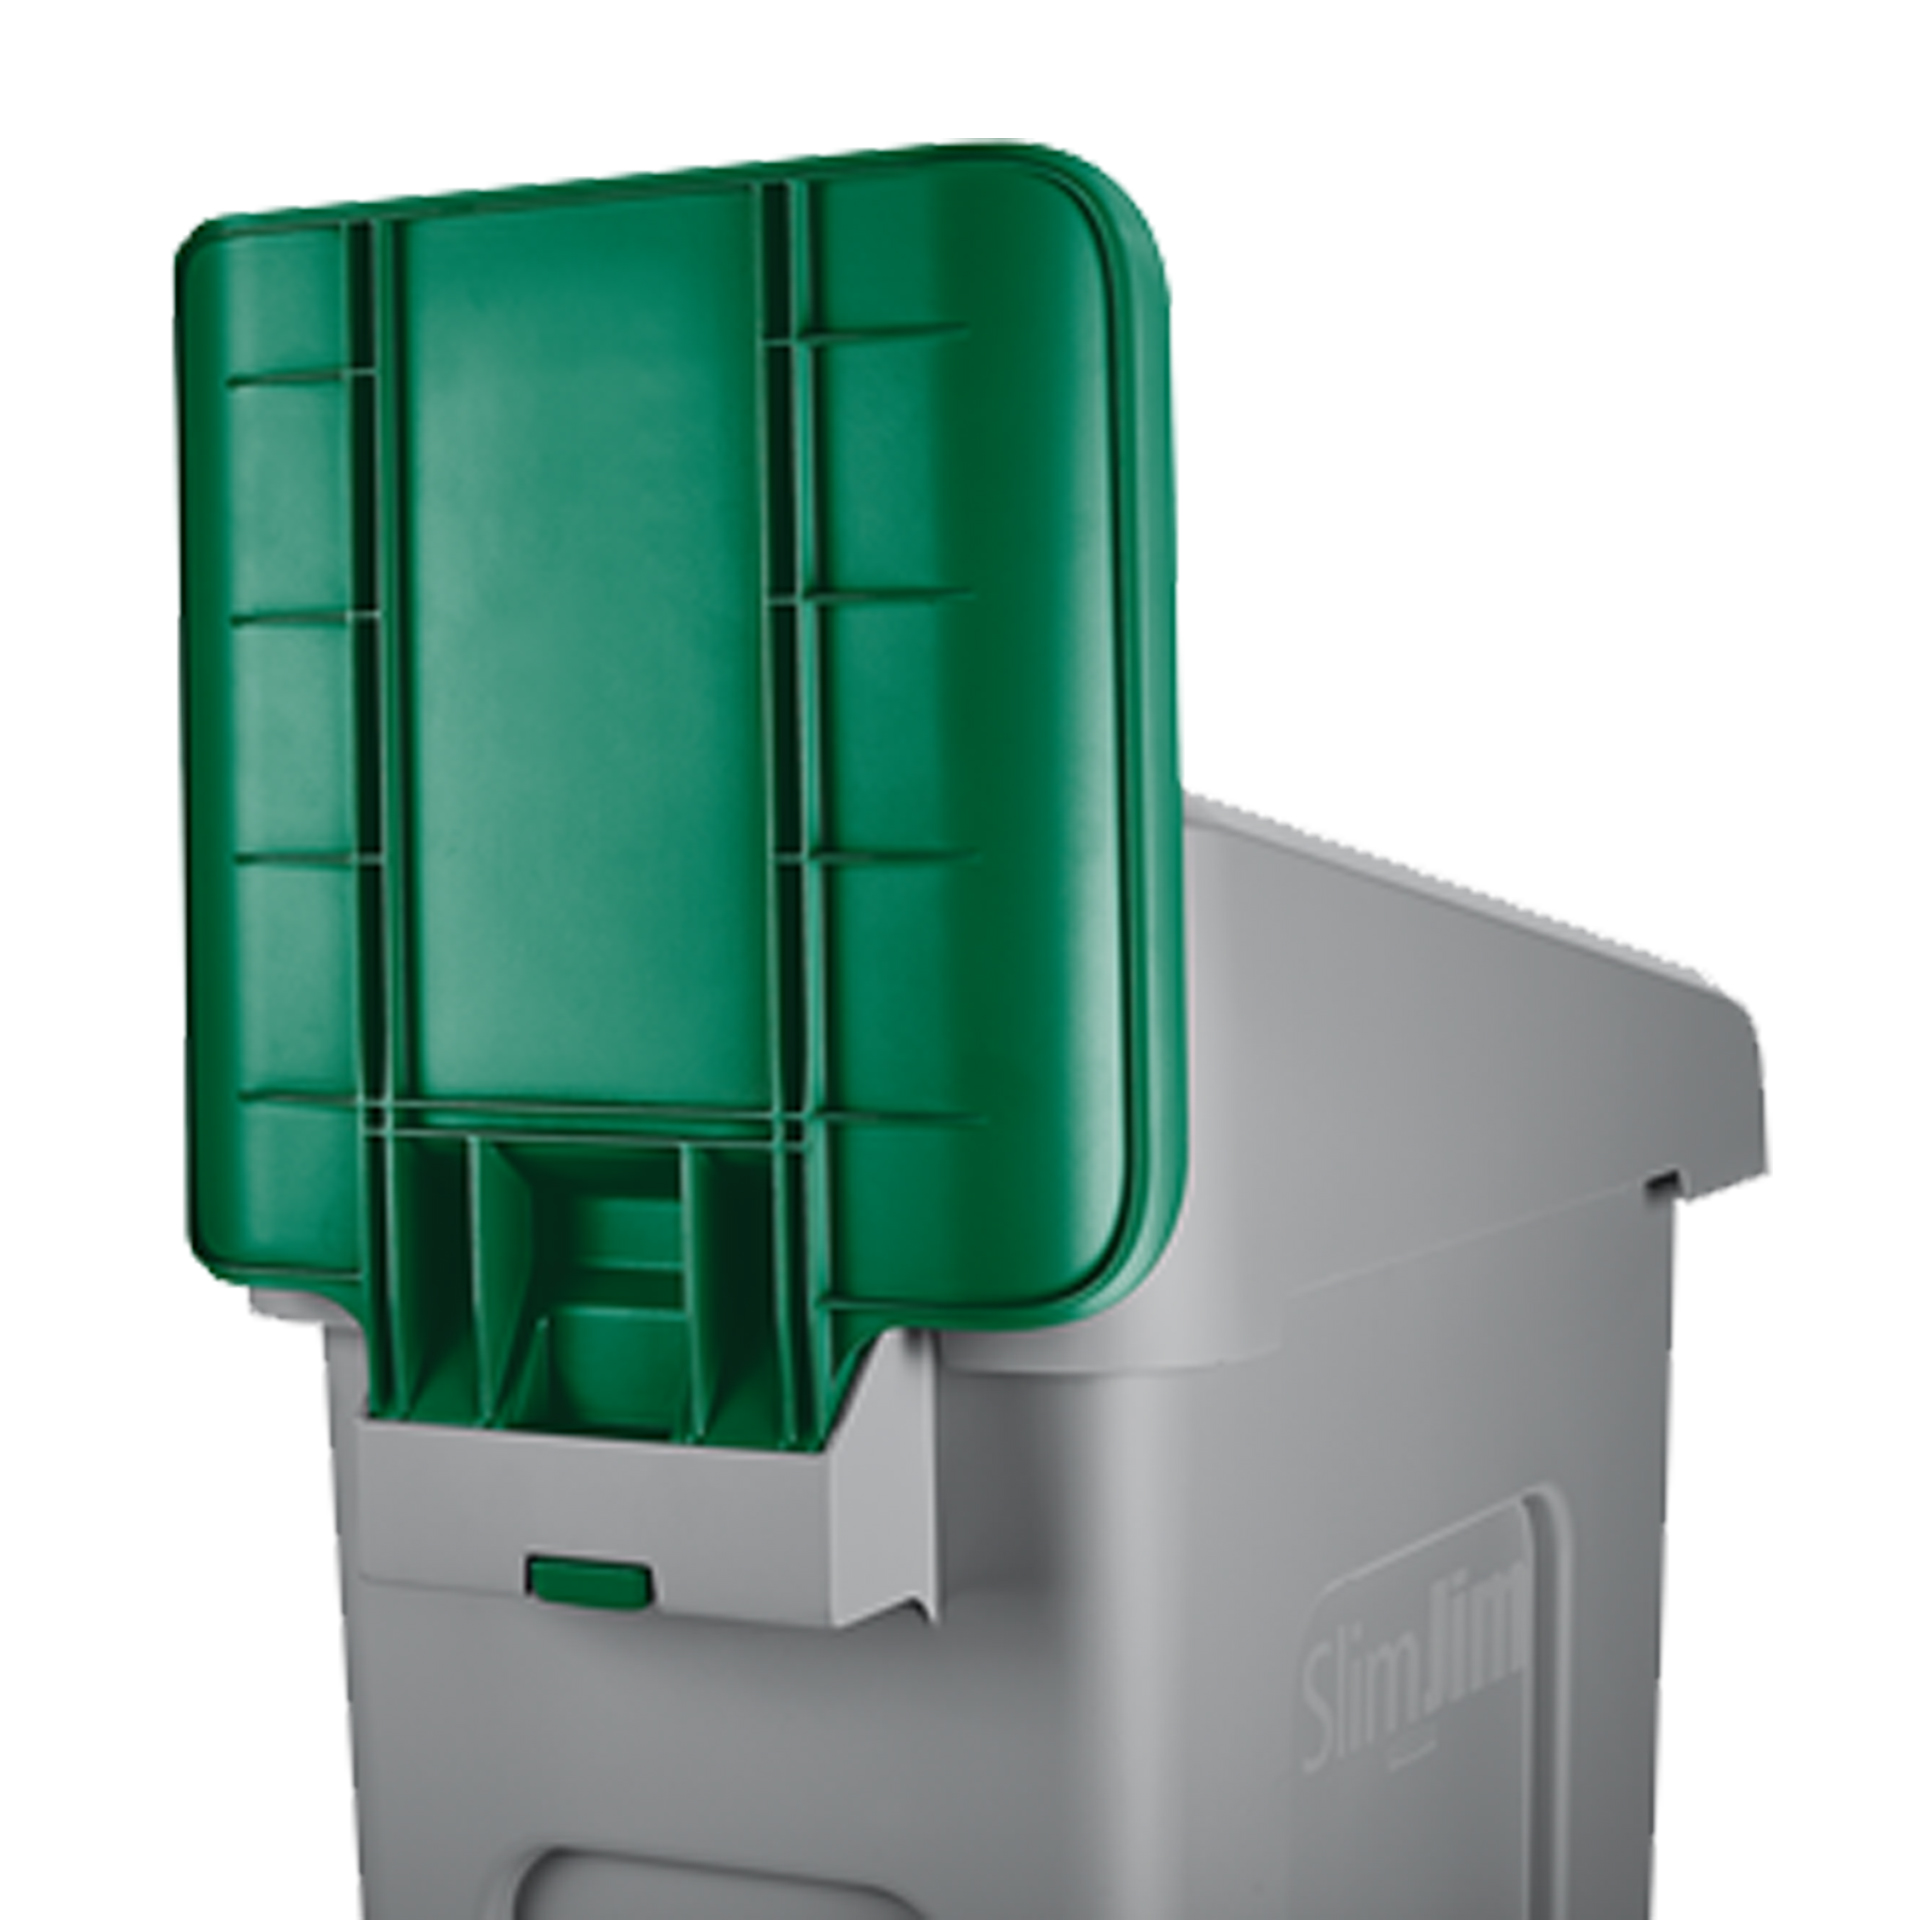 ป้ายสำหรับถังขยะรีไซเคิล Slim Jim® Recycling Station สีเขียว